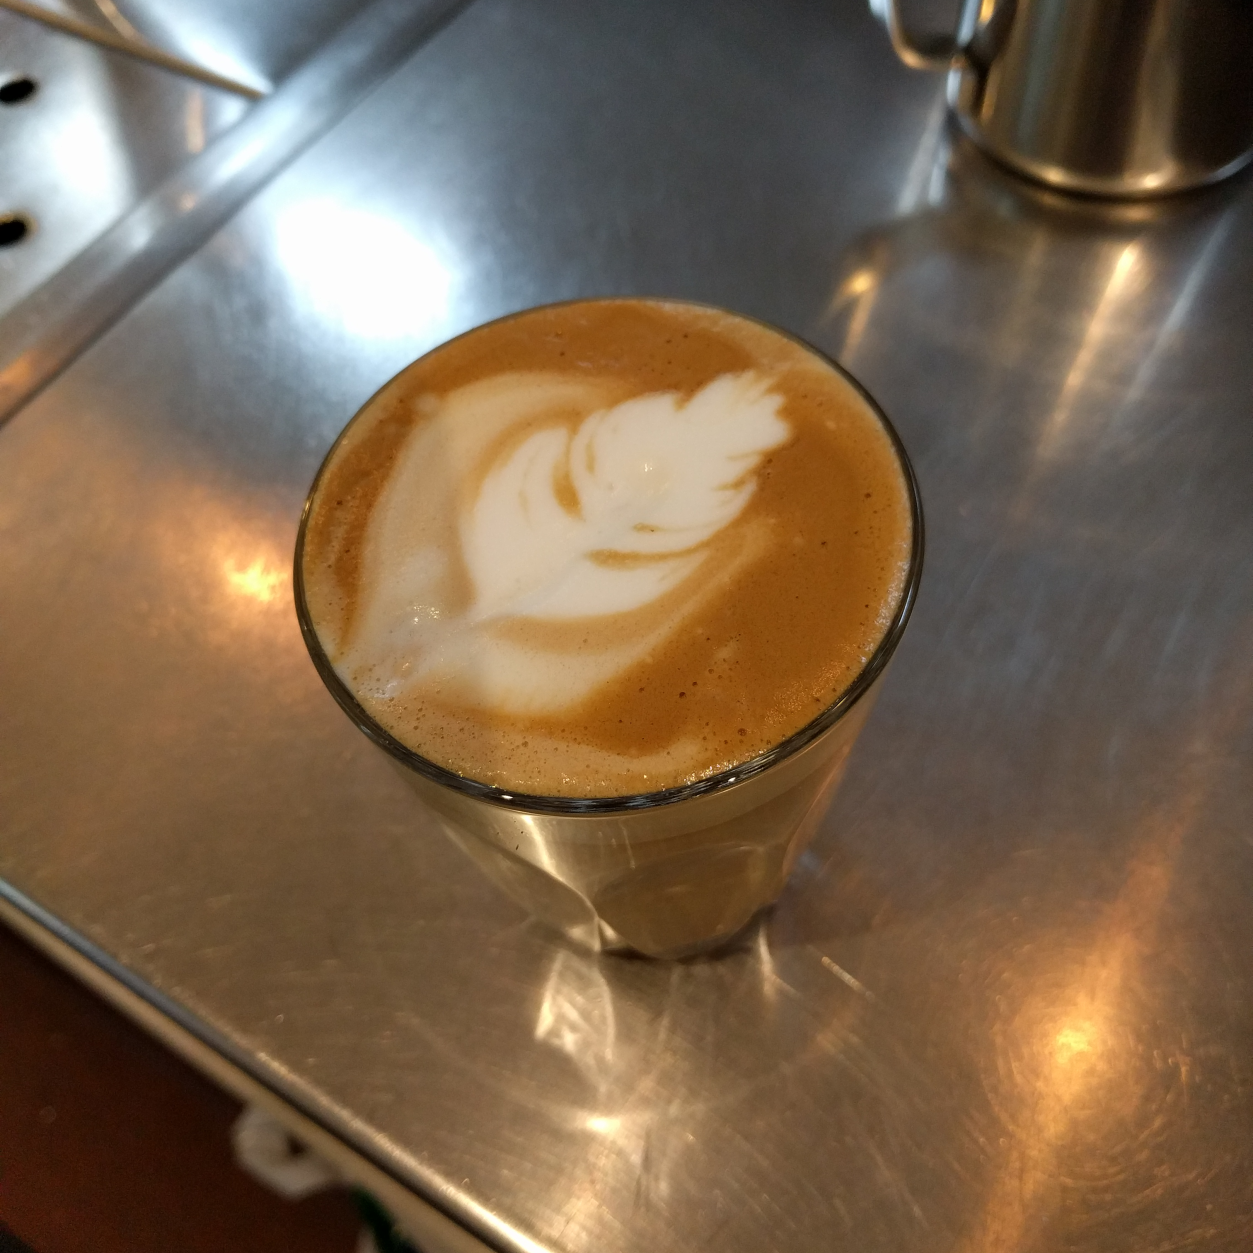 Some of my best latté art